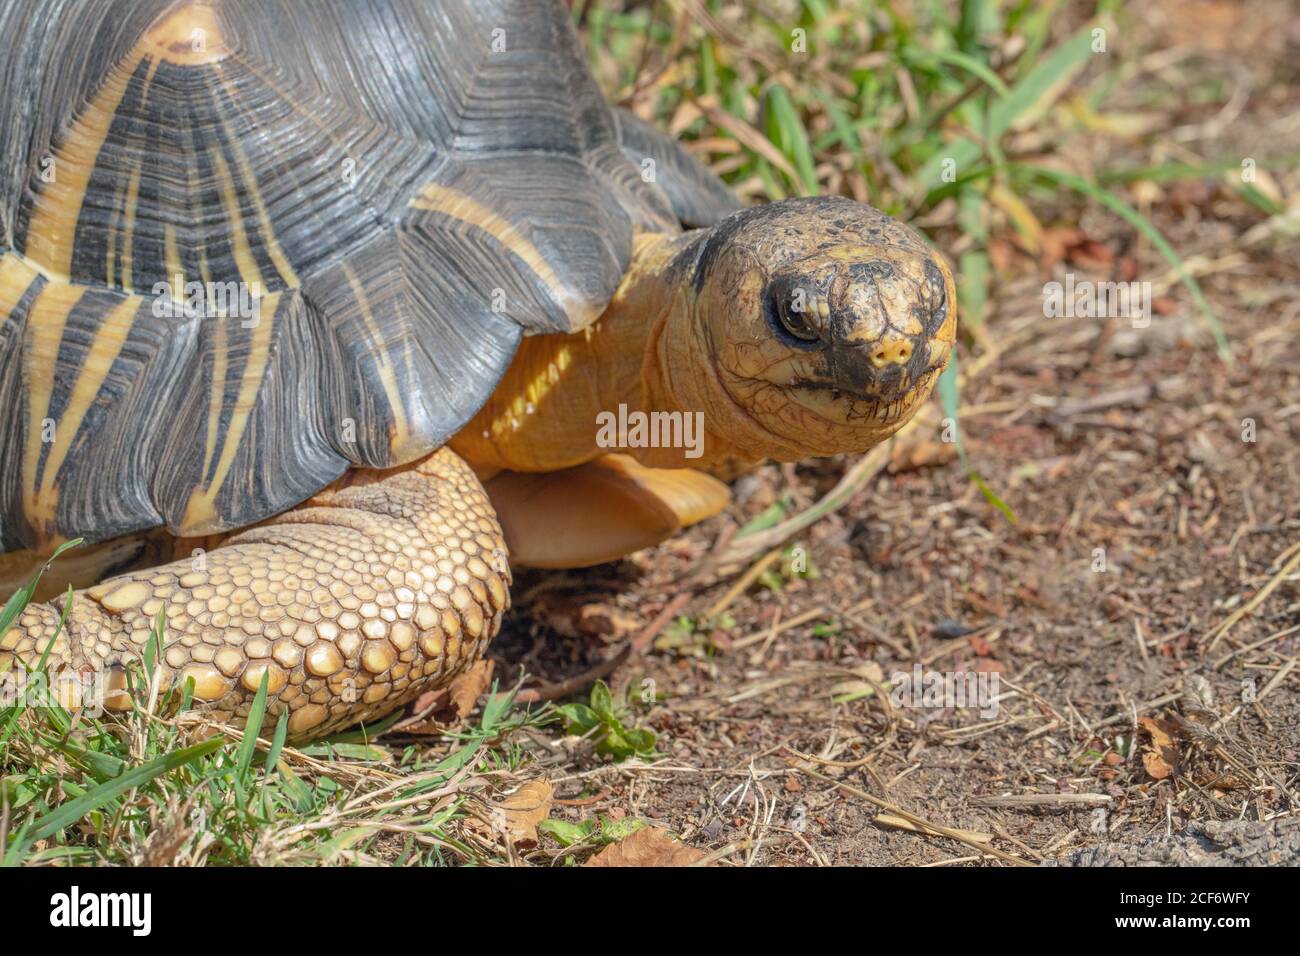 Radiated Tortoise (Astrochelys radiata). Kopf in Nahaufnahme, nach vorne gerichtet. Gesichts- und Gesichtszüge, Augenkontakt. Elephantine Vorderfuß. Karapace, scut Stockfoto